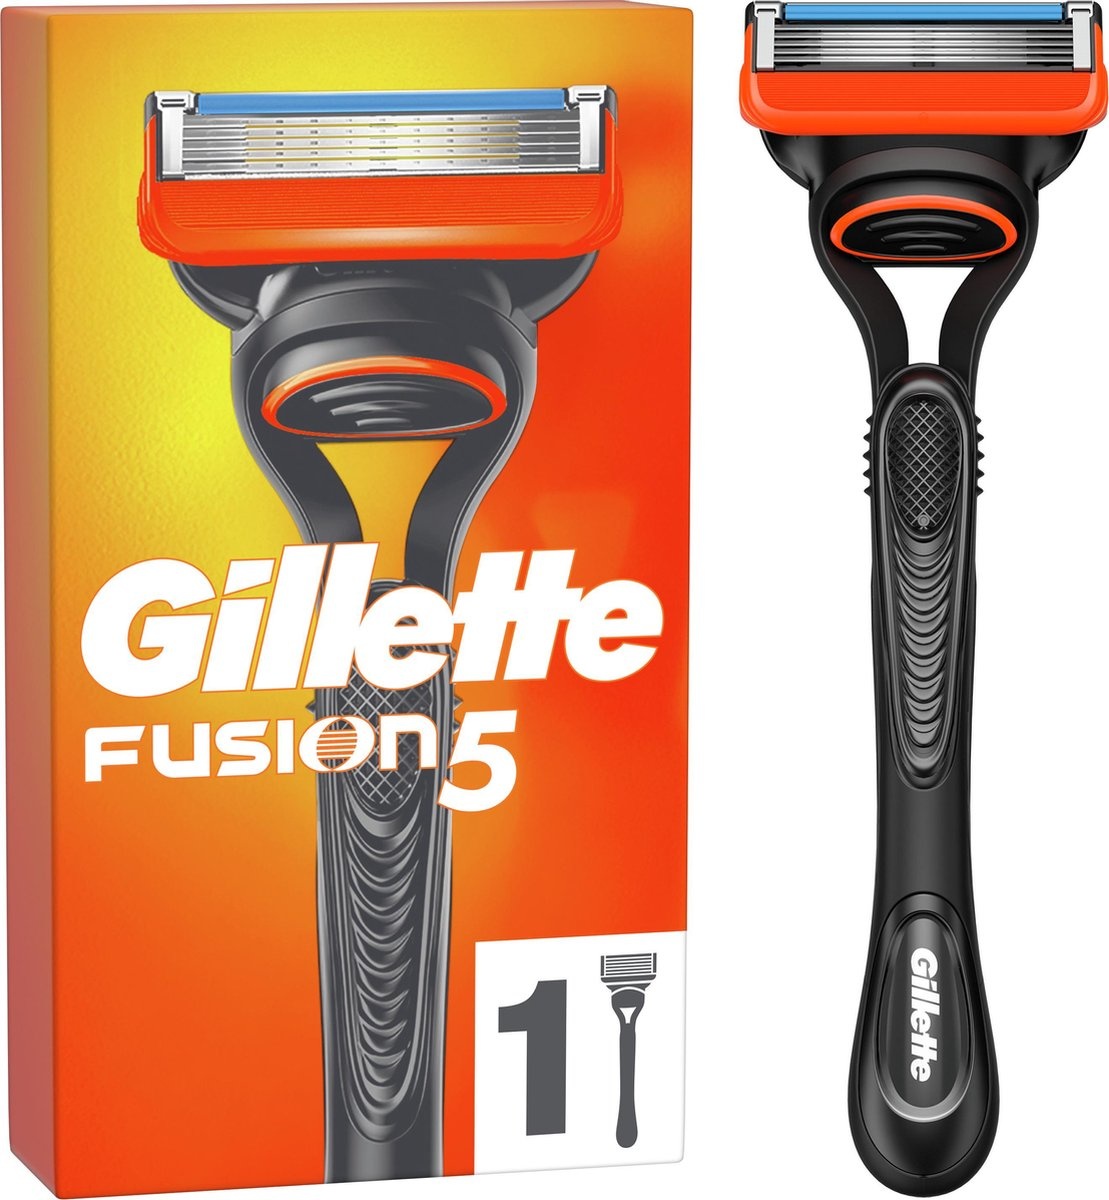 Système de rasage pour hommes Gillette Fusion5 - Emballage endommagé